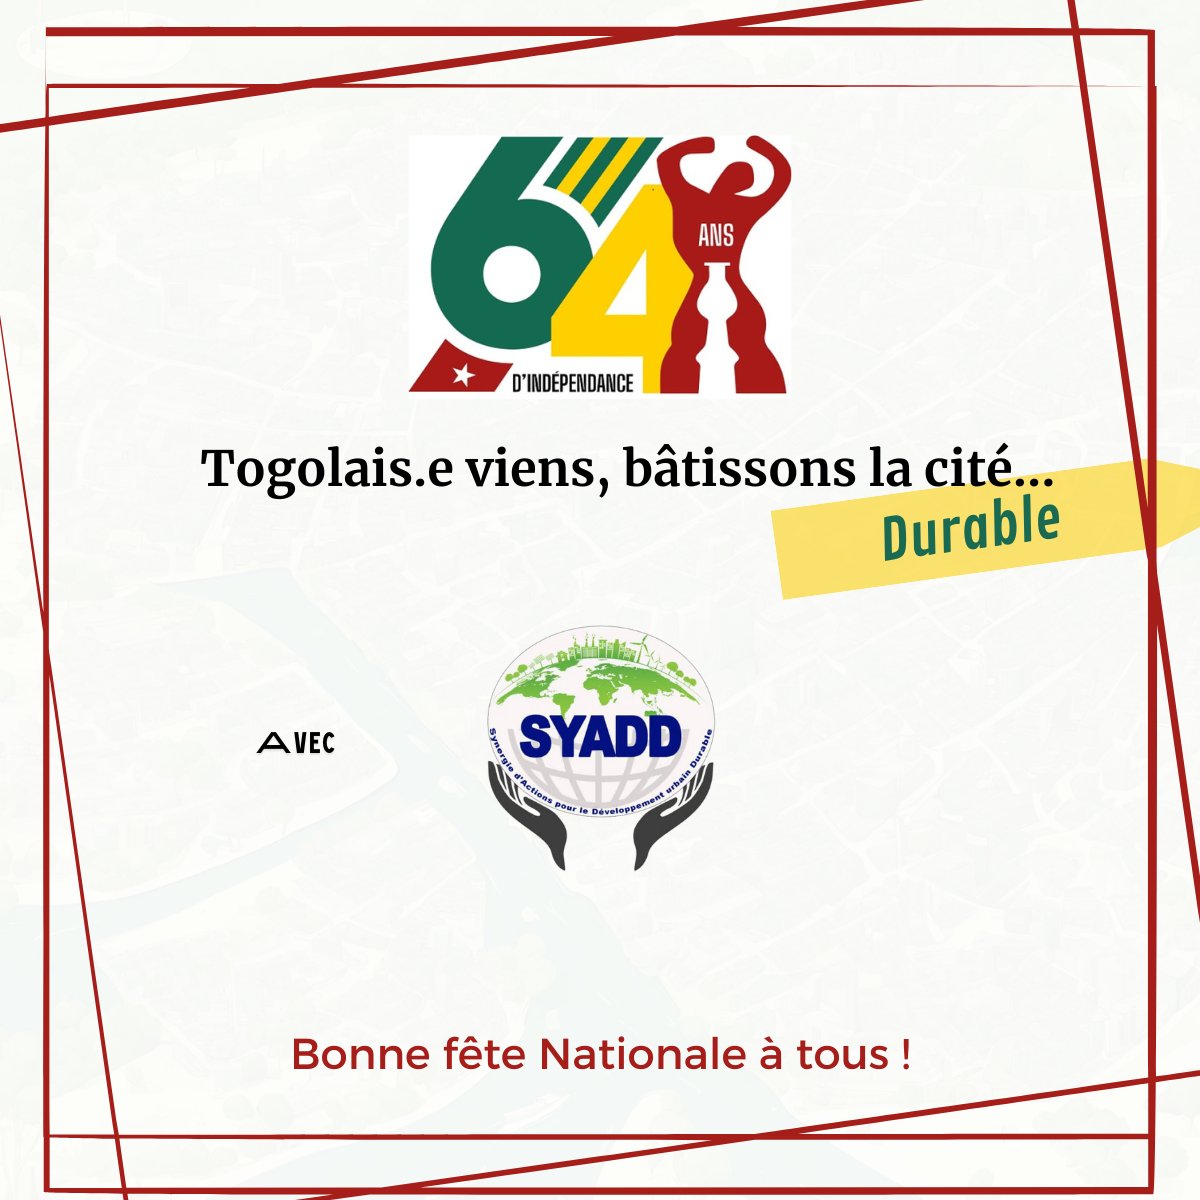 Bonne fête nationale !
#Togo64 
#IndependenceDay 
#Denyigbã